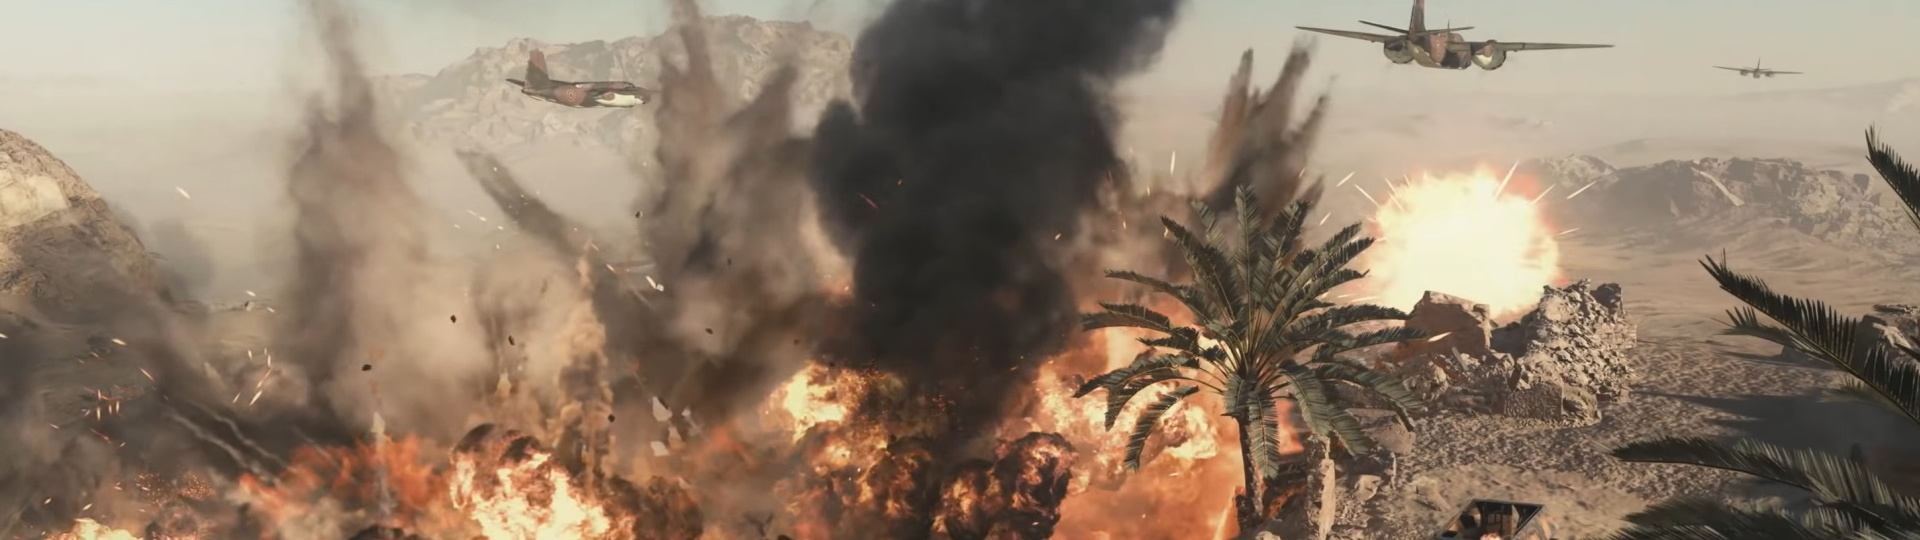 Nový trailer nás zavede do příběhu Call of Duty Vanguard | Videa